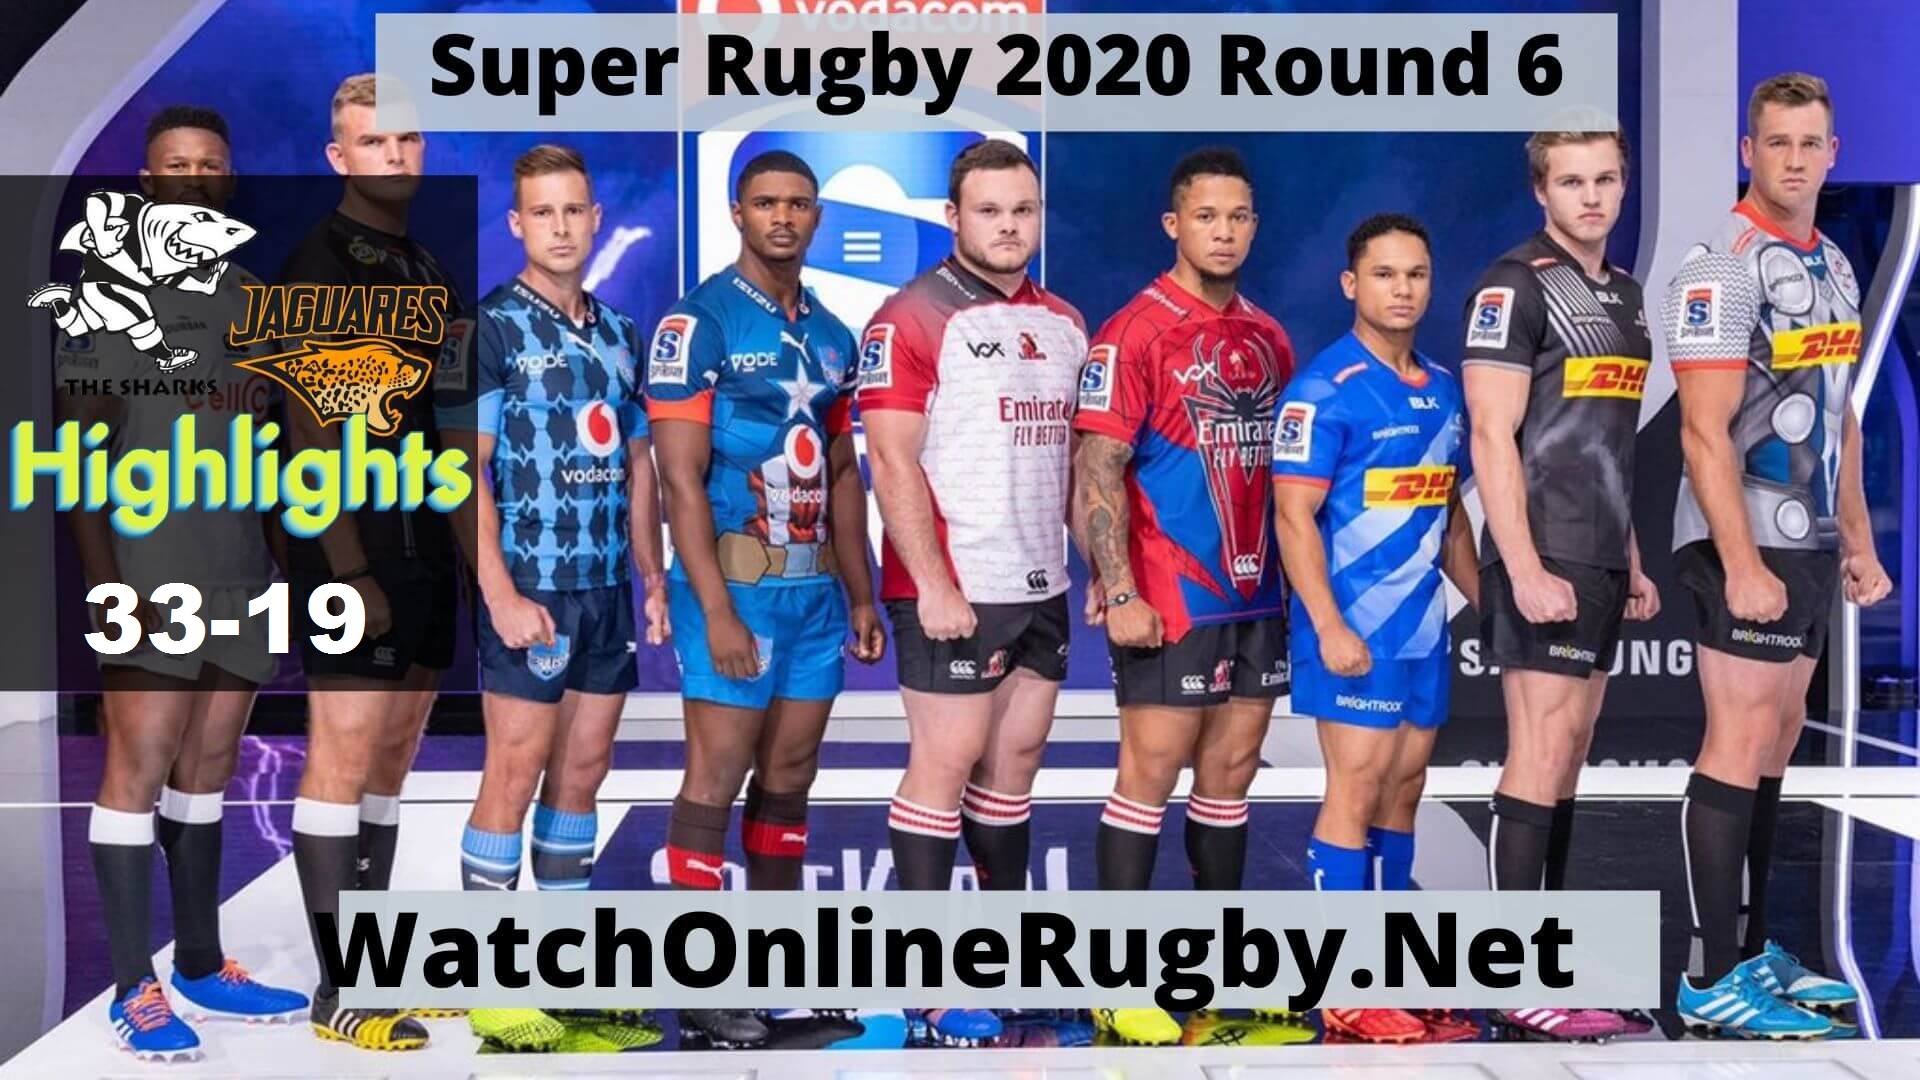 Sharks Vs Jaguares Highlights 2020 Super Rugby Rd 6